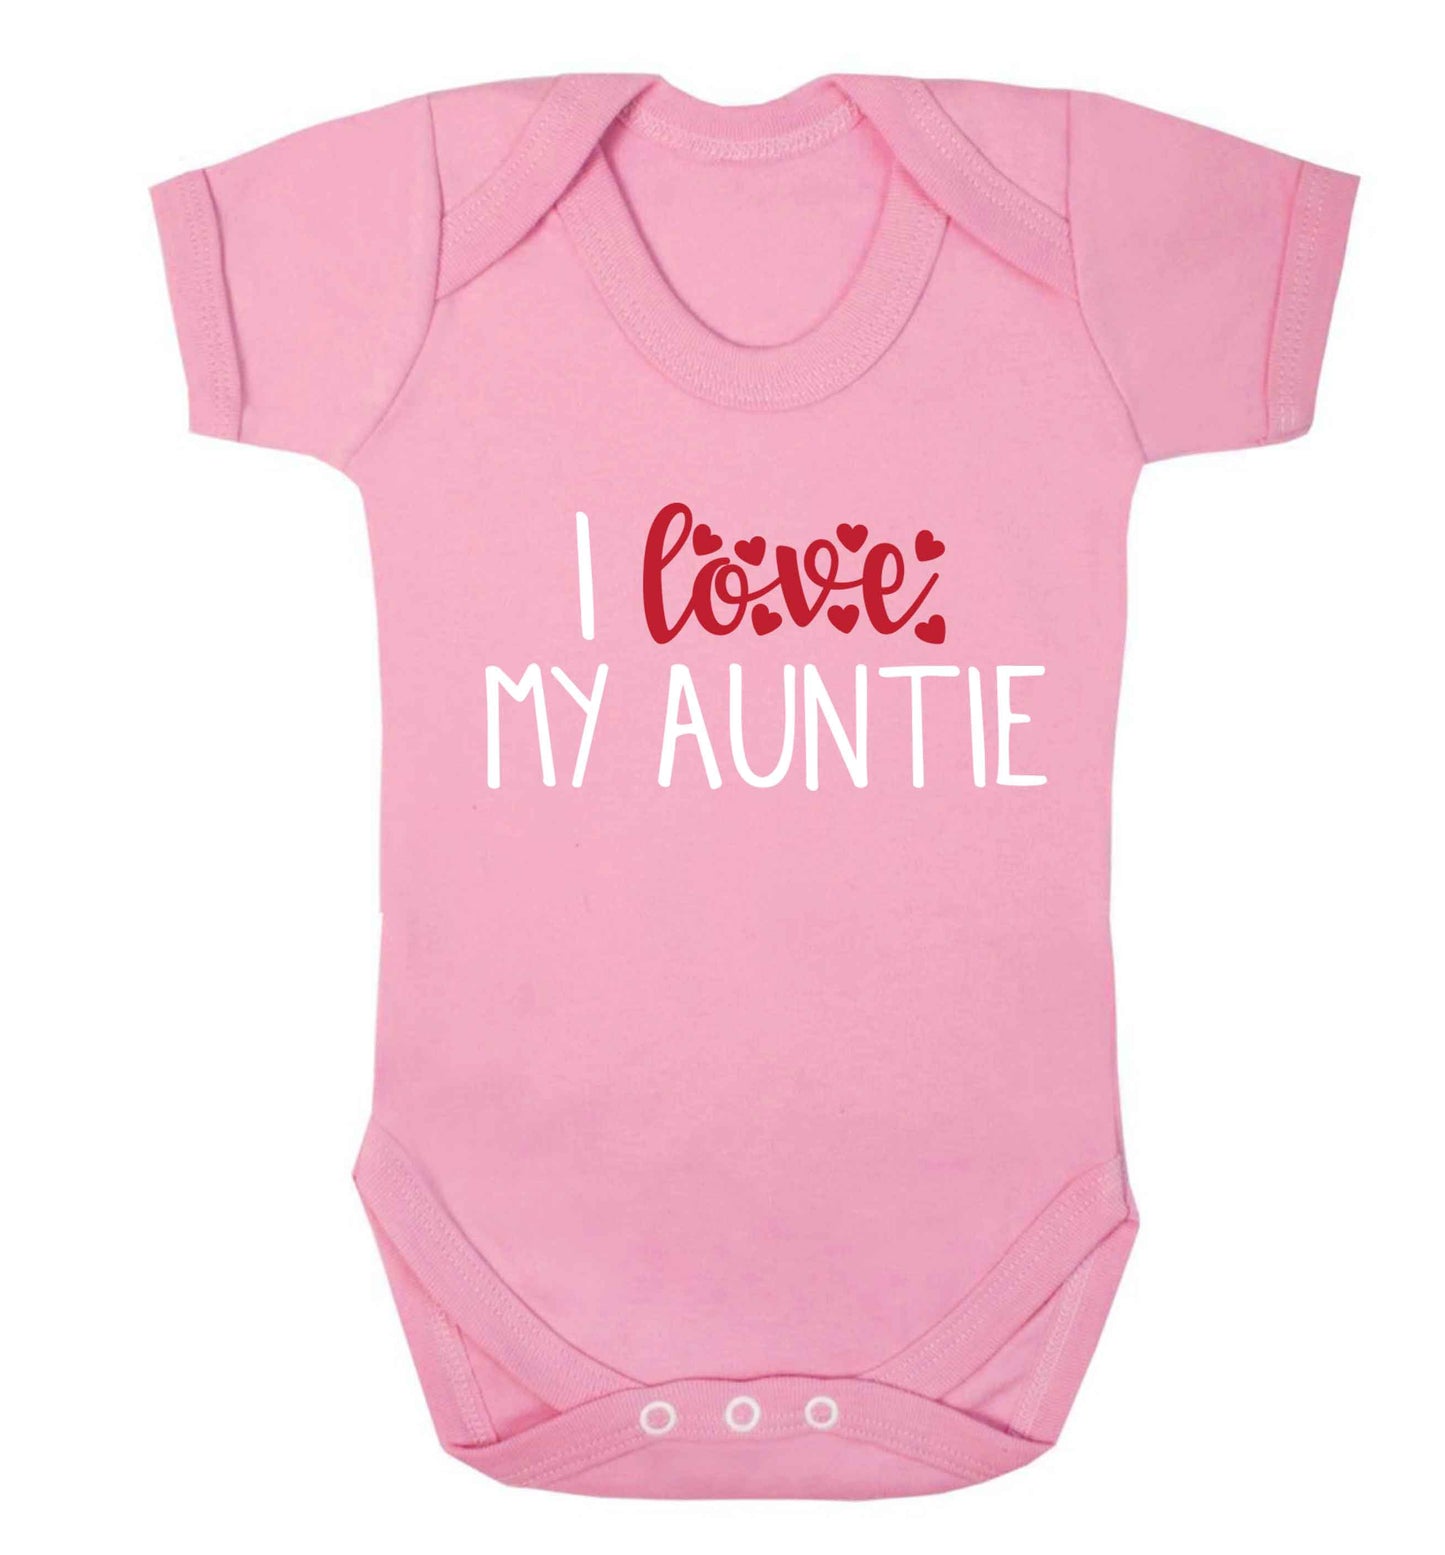 I love my auntie Baby Vest pale pink 18-24 months